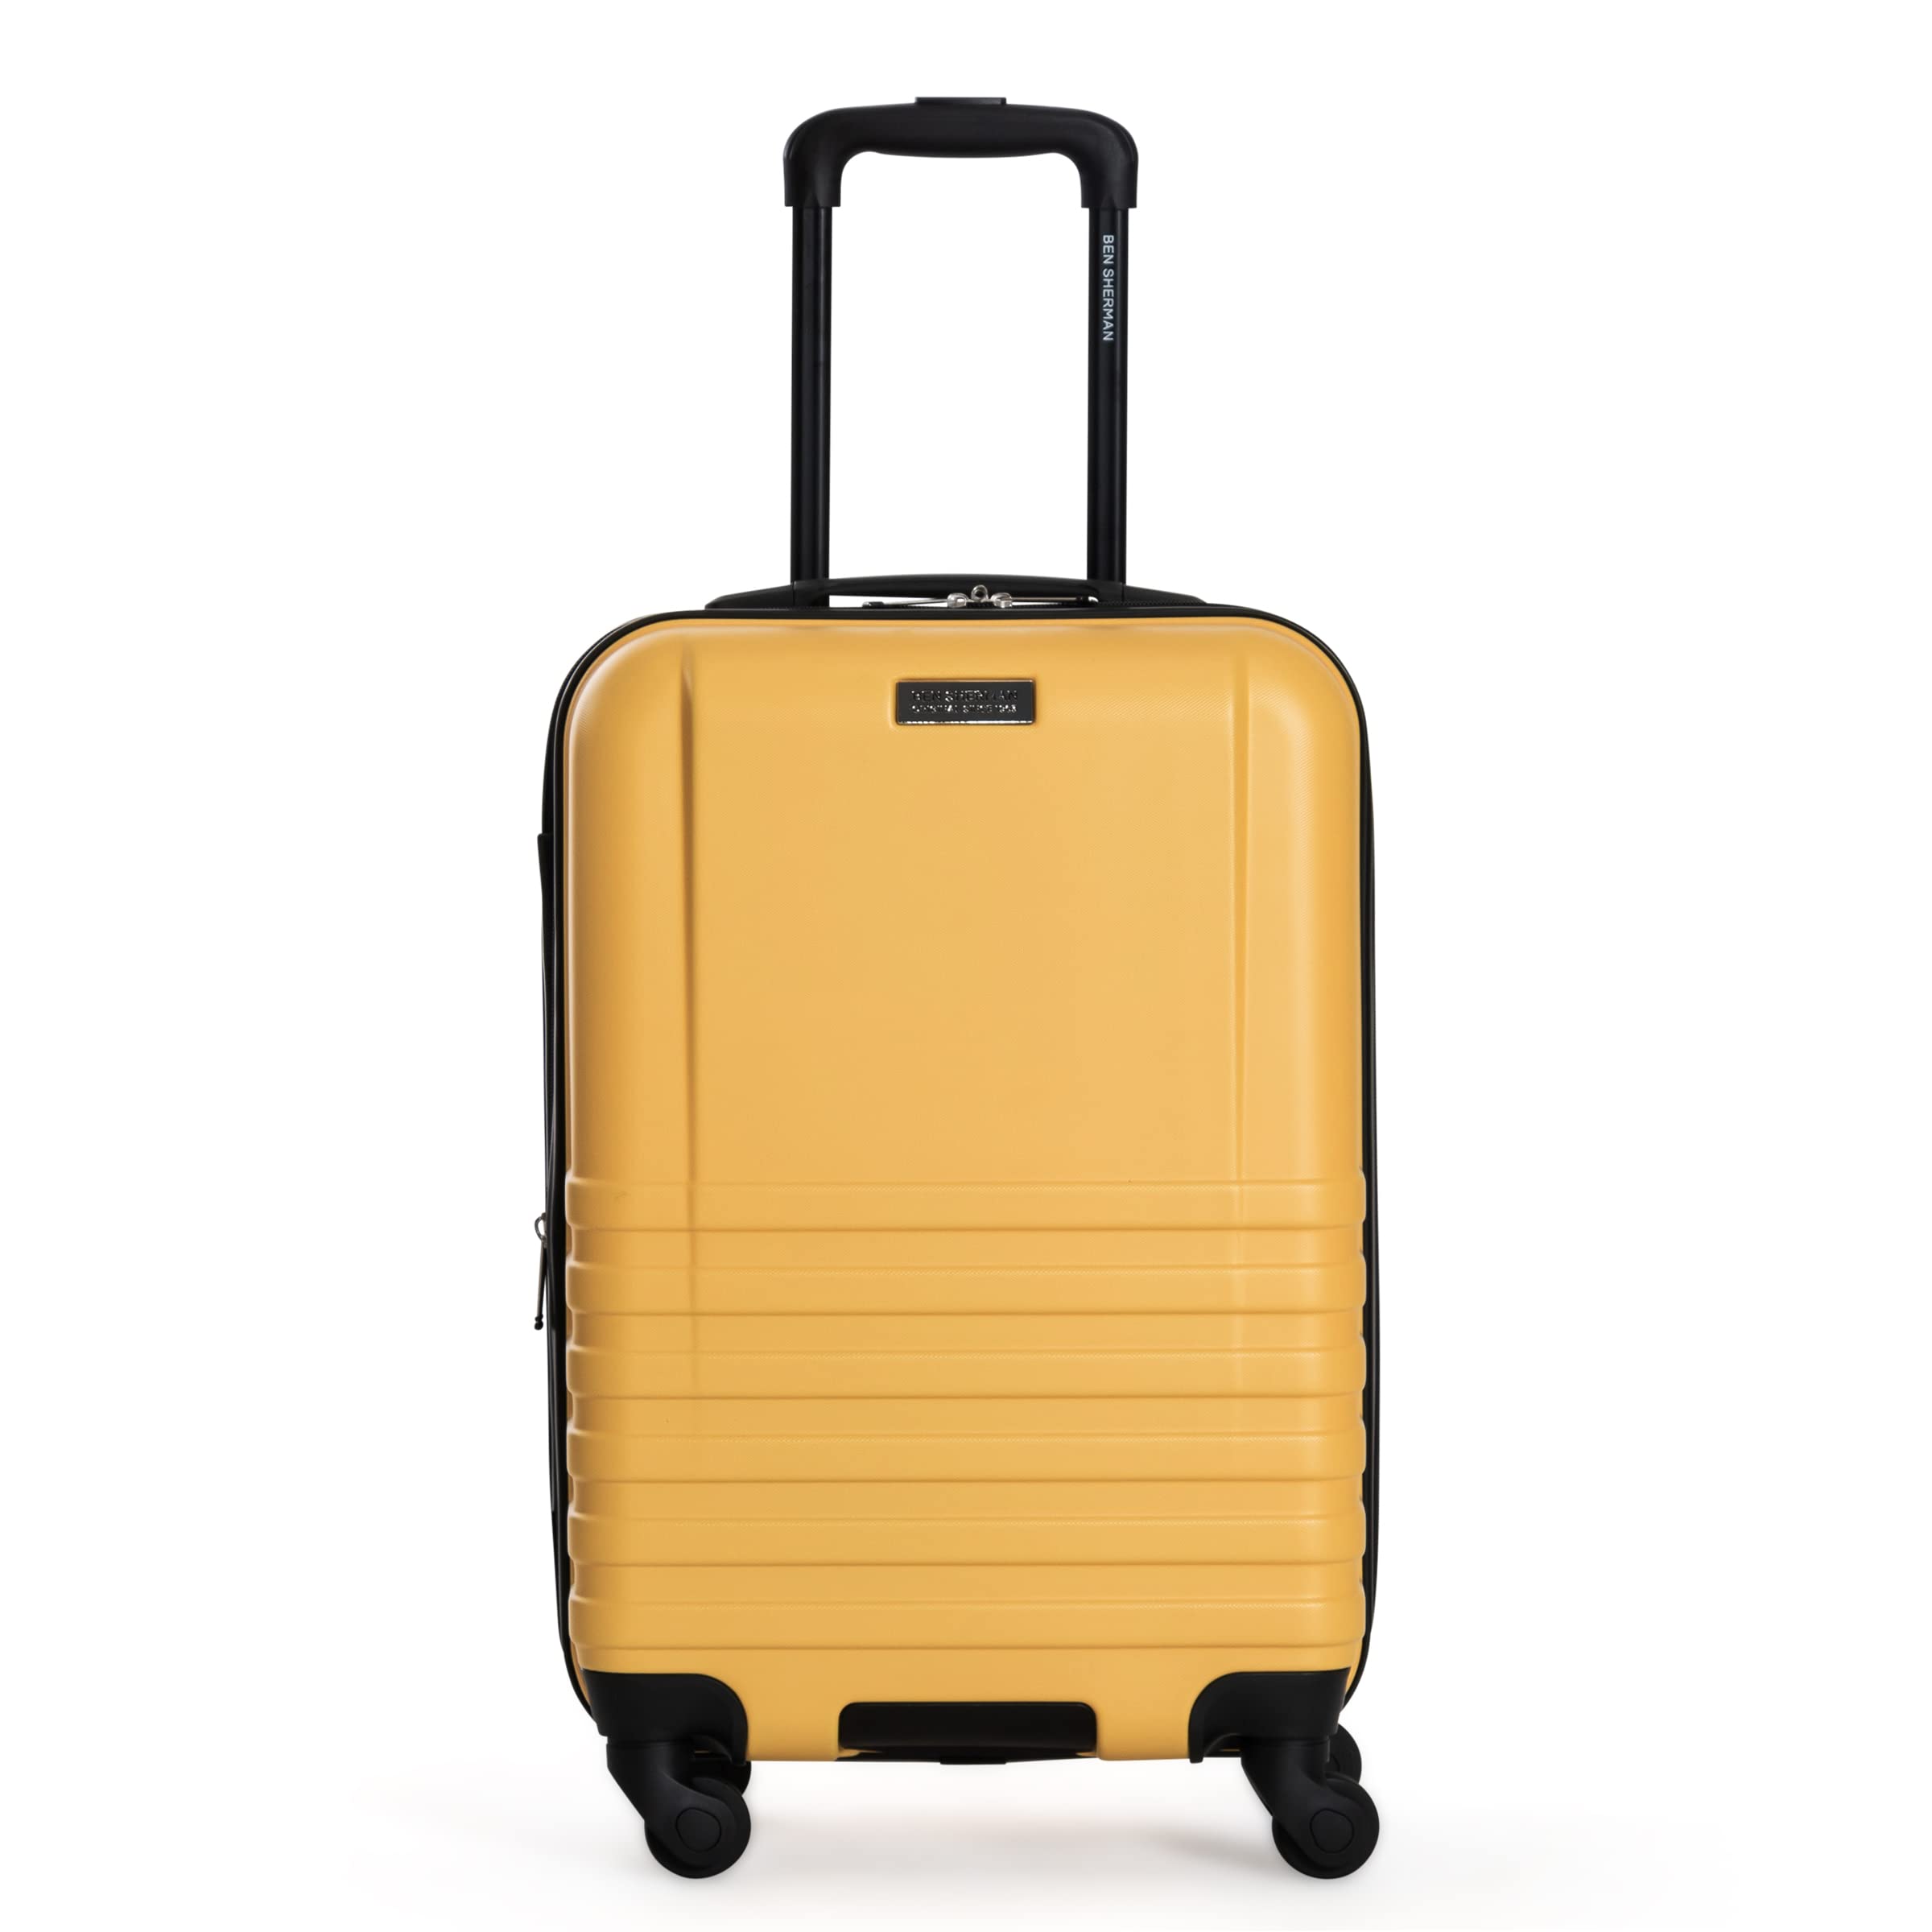 Ben Sherman Spinner Travel Upright Luggage, Mustard, 4-Wheel 20